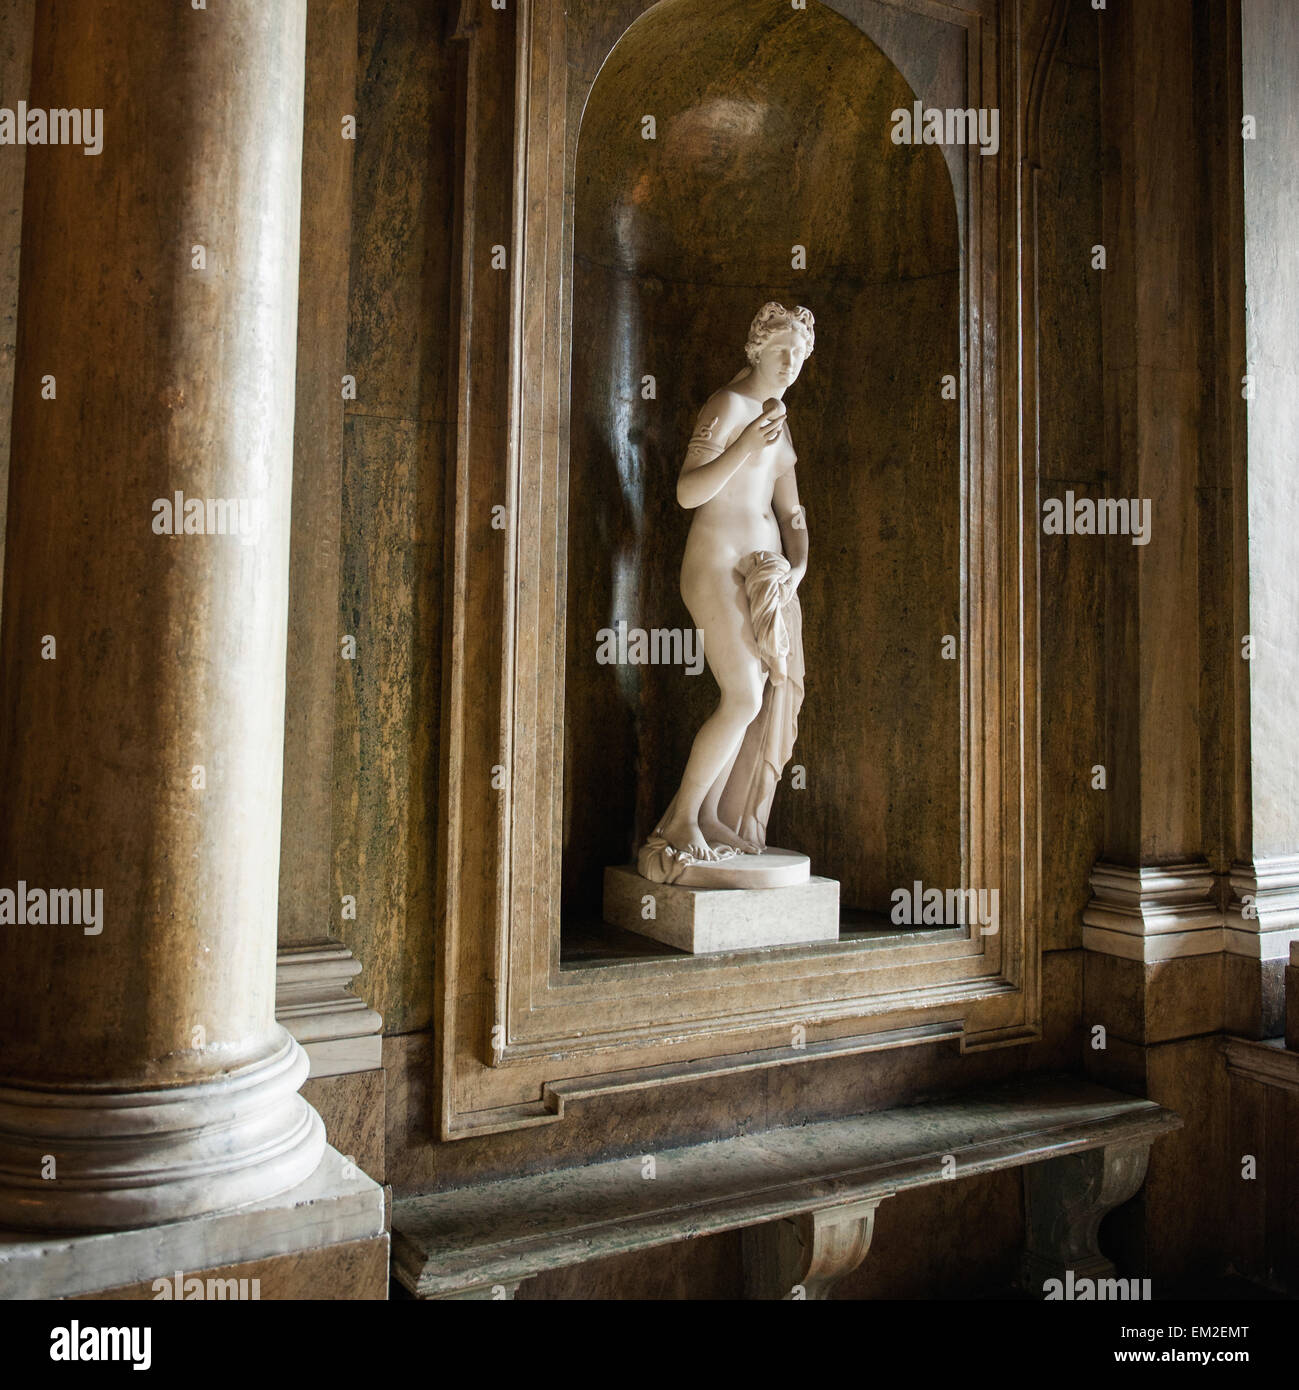 Sculpture d'une femme dans une niche en bois à l'intérieur du palais de Stockholm, Stockholm Suède Banque D'Images